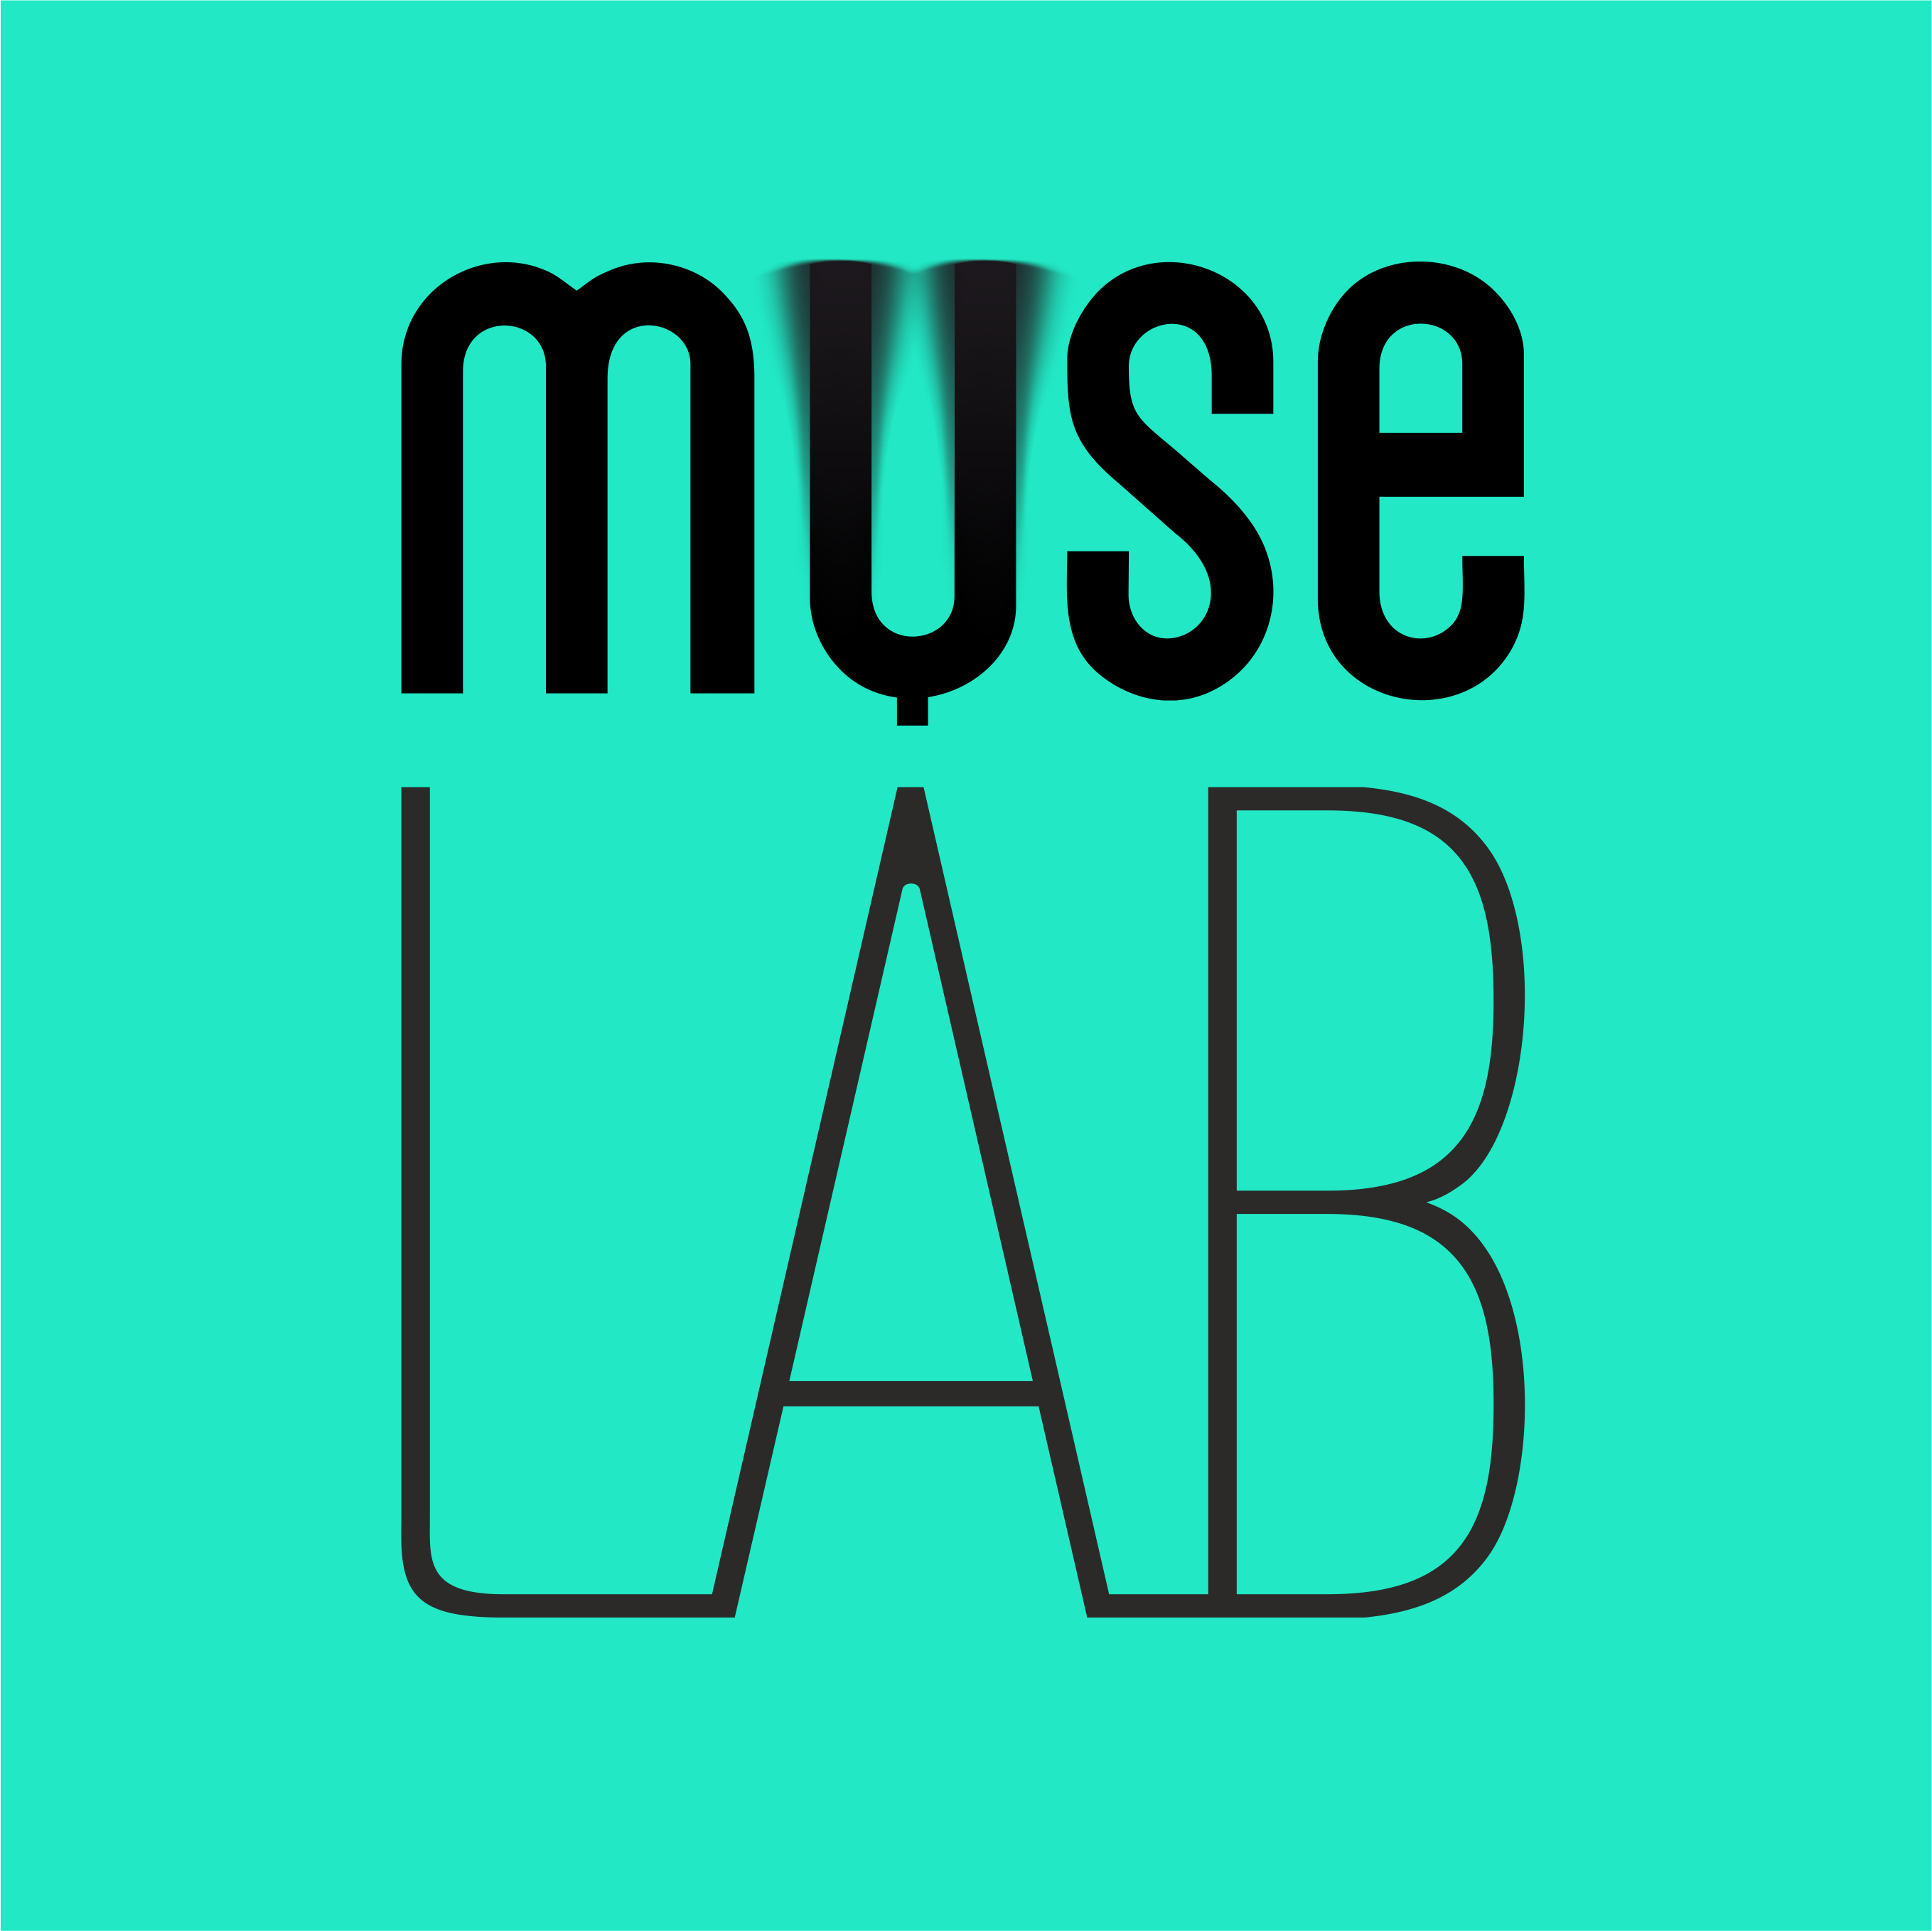 MUSE Laboratory